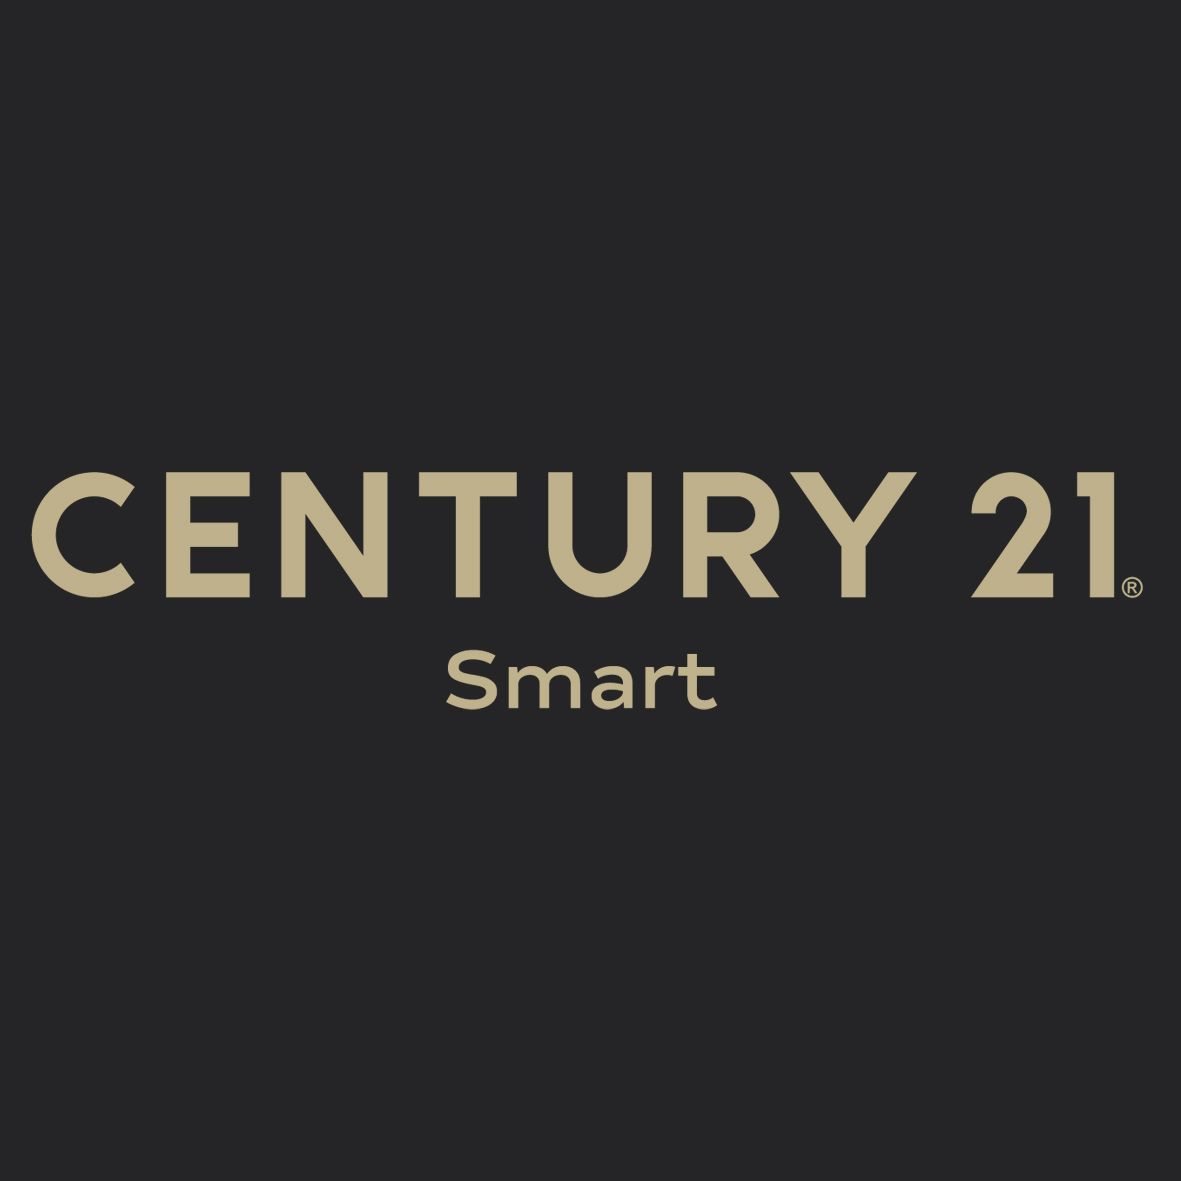 CENTURY 21 Smart